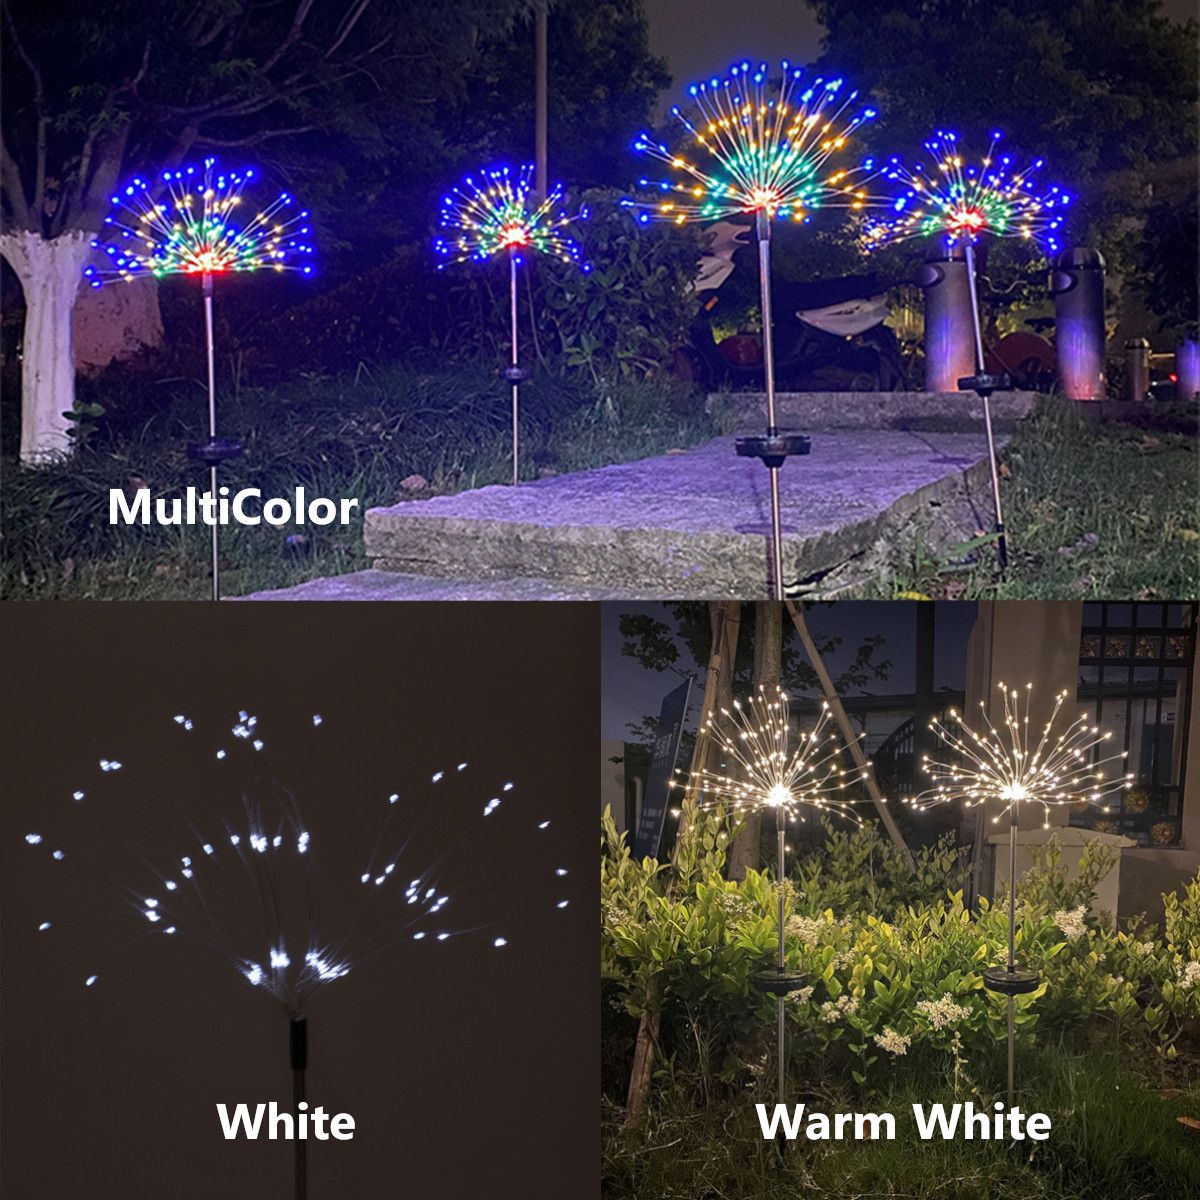 90120150-LED-Solar-Lamp-Starburst-Fairy-String-Light-Outdoor-Garden-1760777